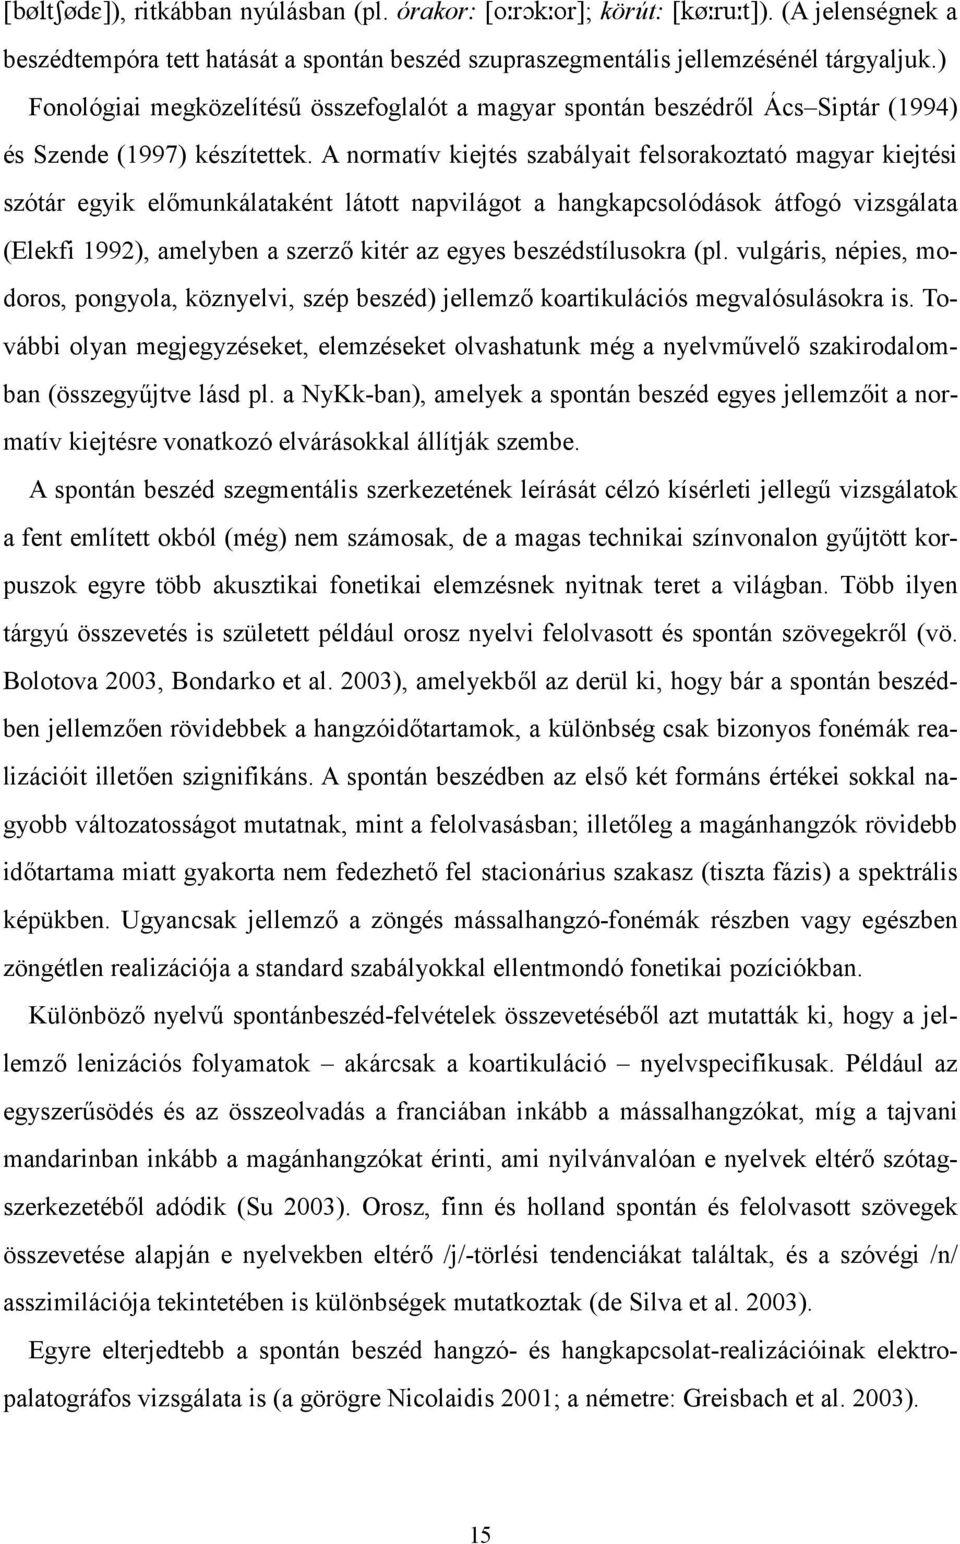 A normatív kiejtés szabályait felsorakoztató magyar kiejtési szótár egyik elcmunkálataként látott napvilágot a hangkapcsolódások átfogó vizsgálata (Elekfi 1992), amelyben a szerzc kitér az egyes